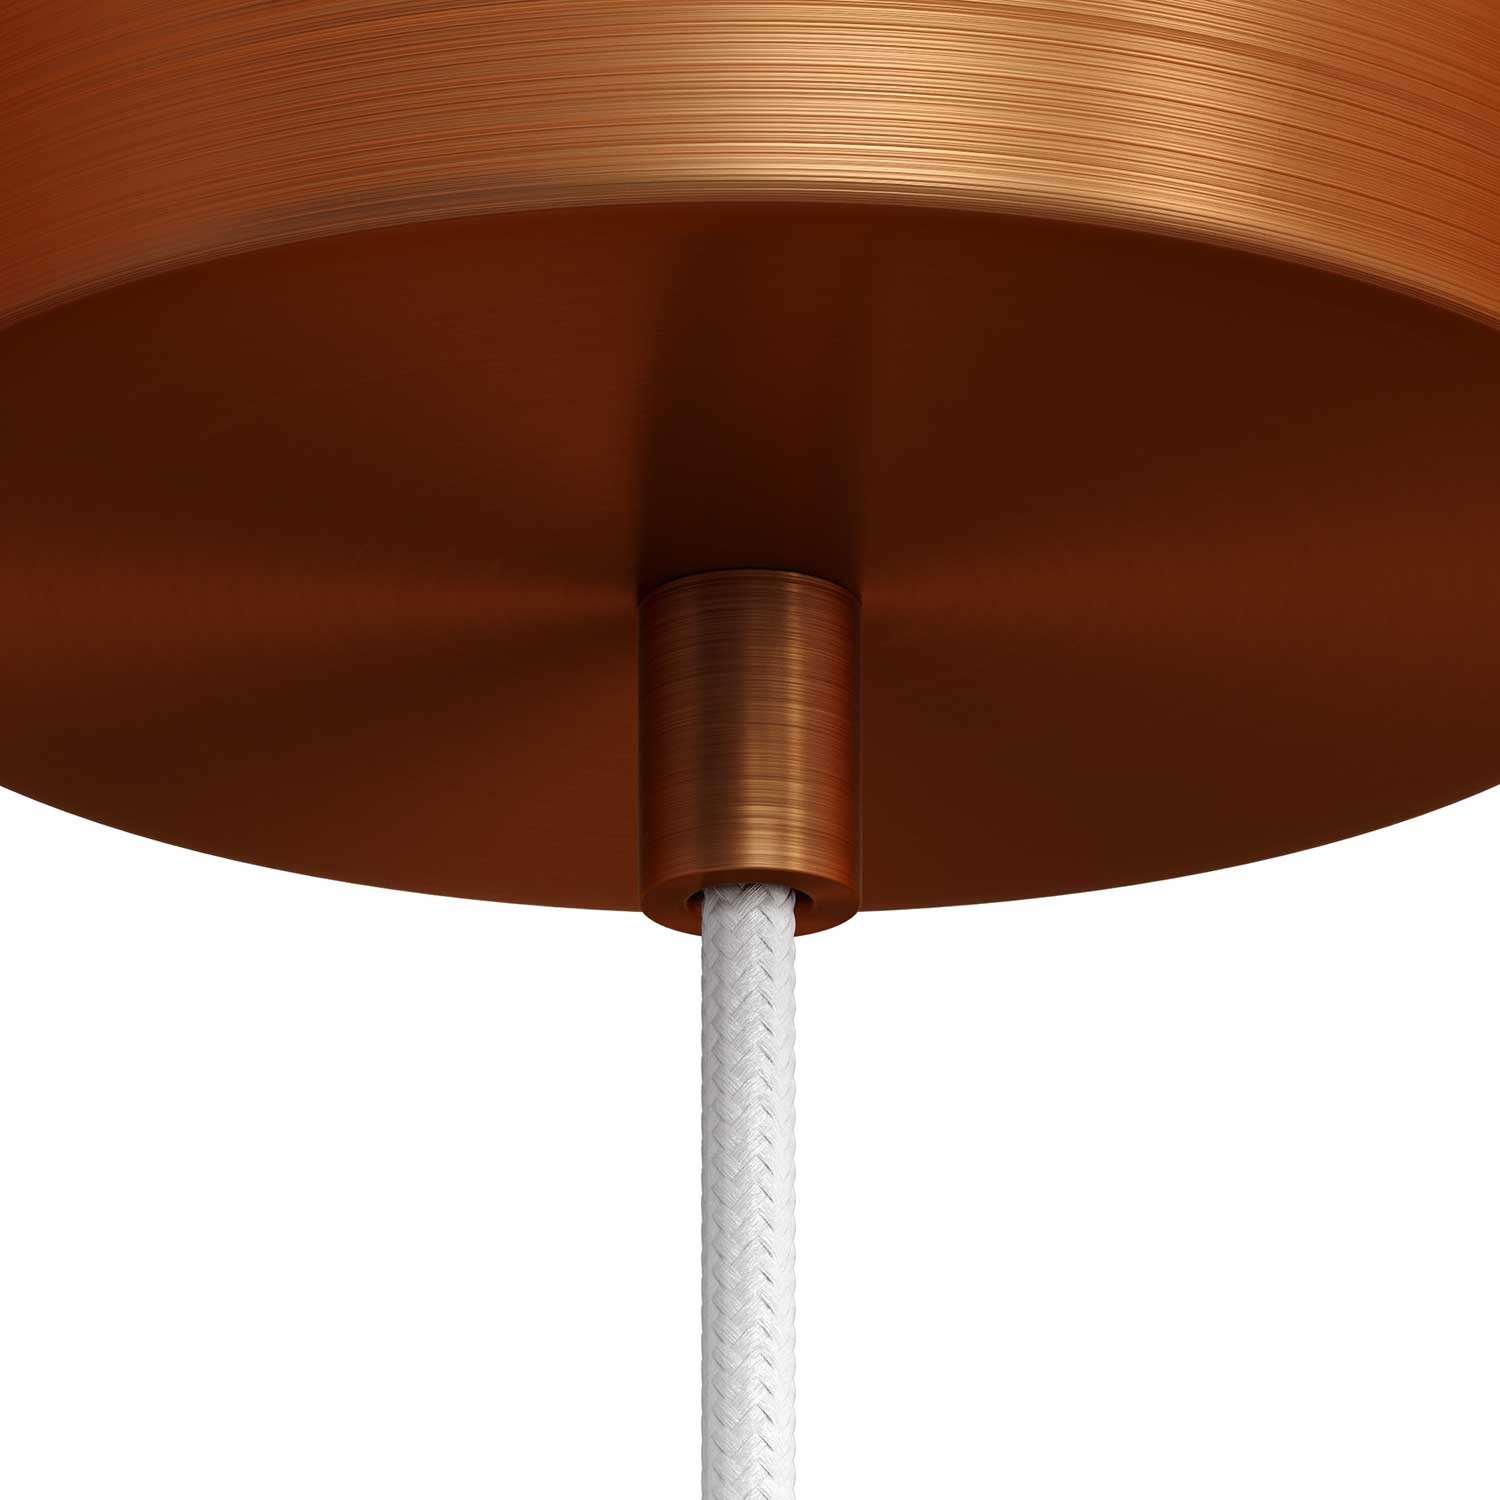 Kovinska ovalna objemka z navojno cevjo, matico in podložko - 2 kos